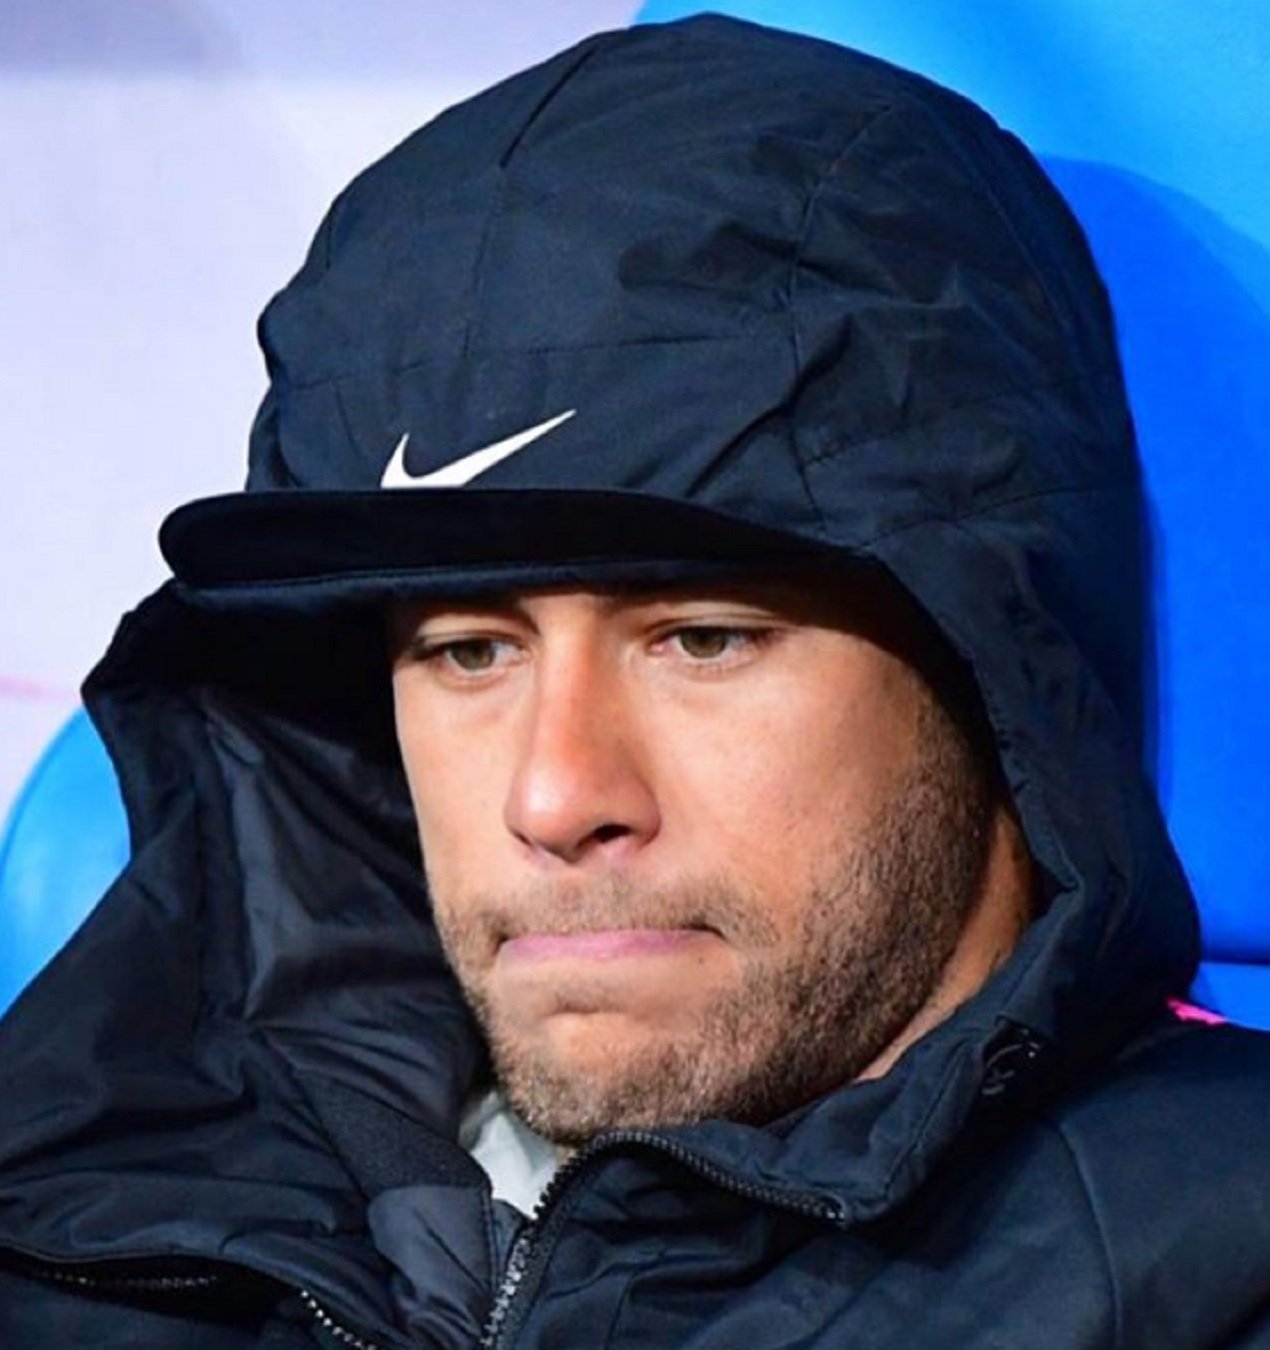 Un exentrenador del Barça lapidado por decir que Neymar "no necesita violar"